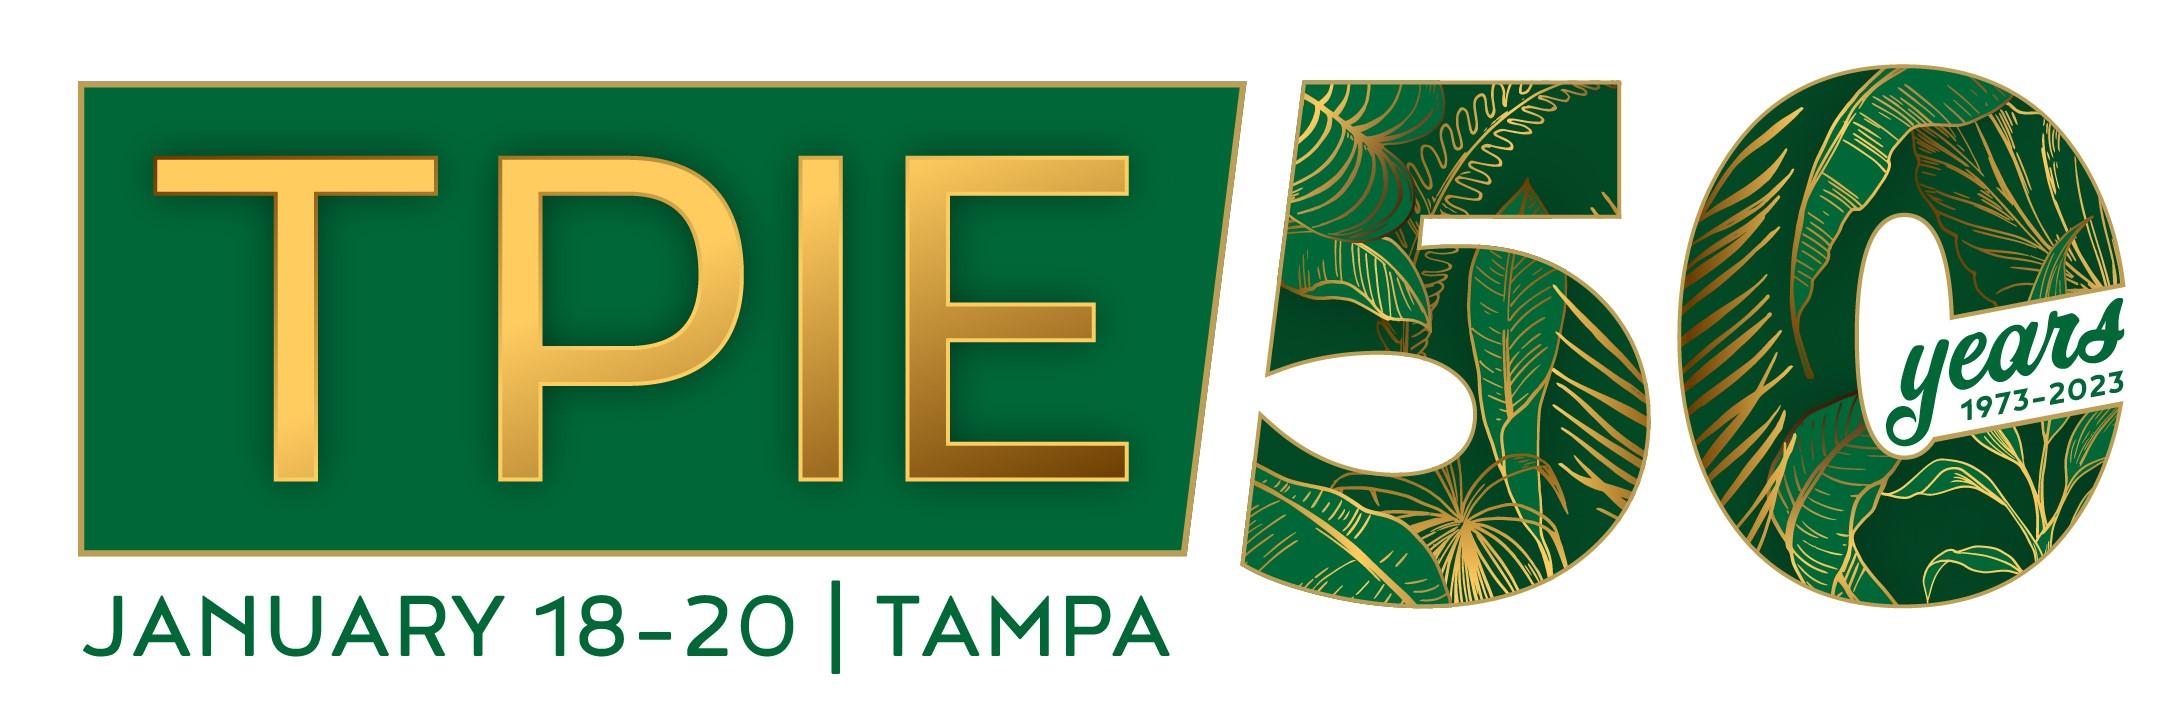 TPIE logo